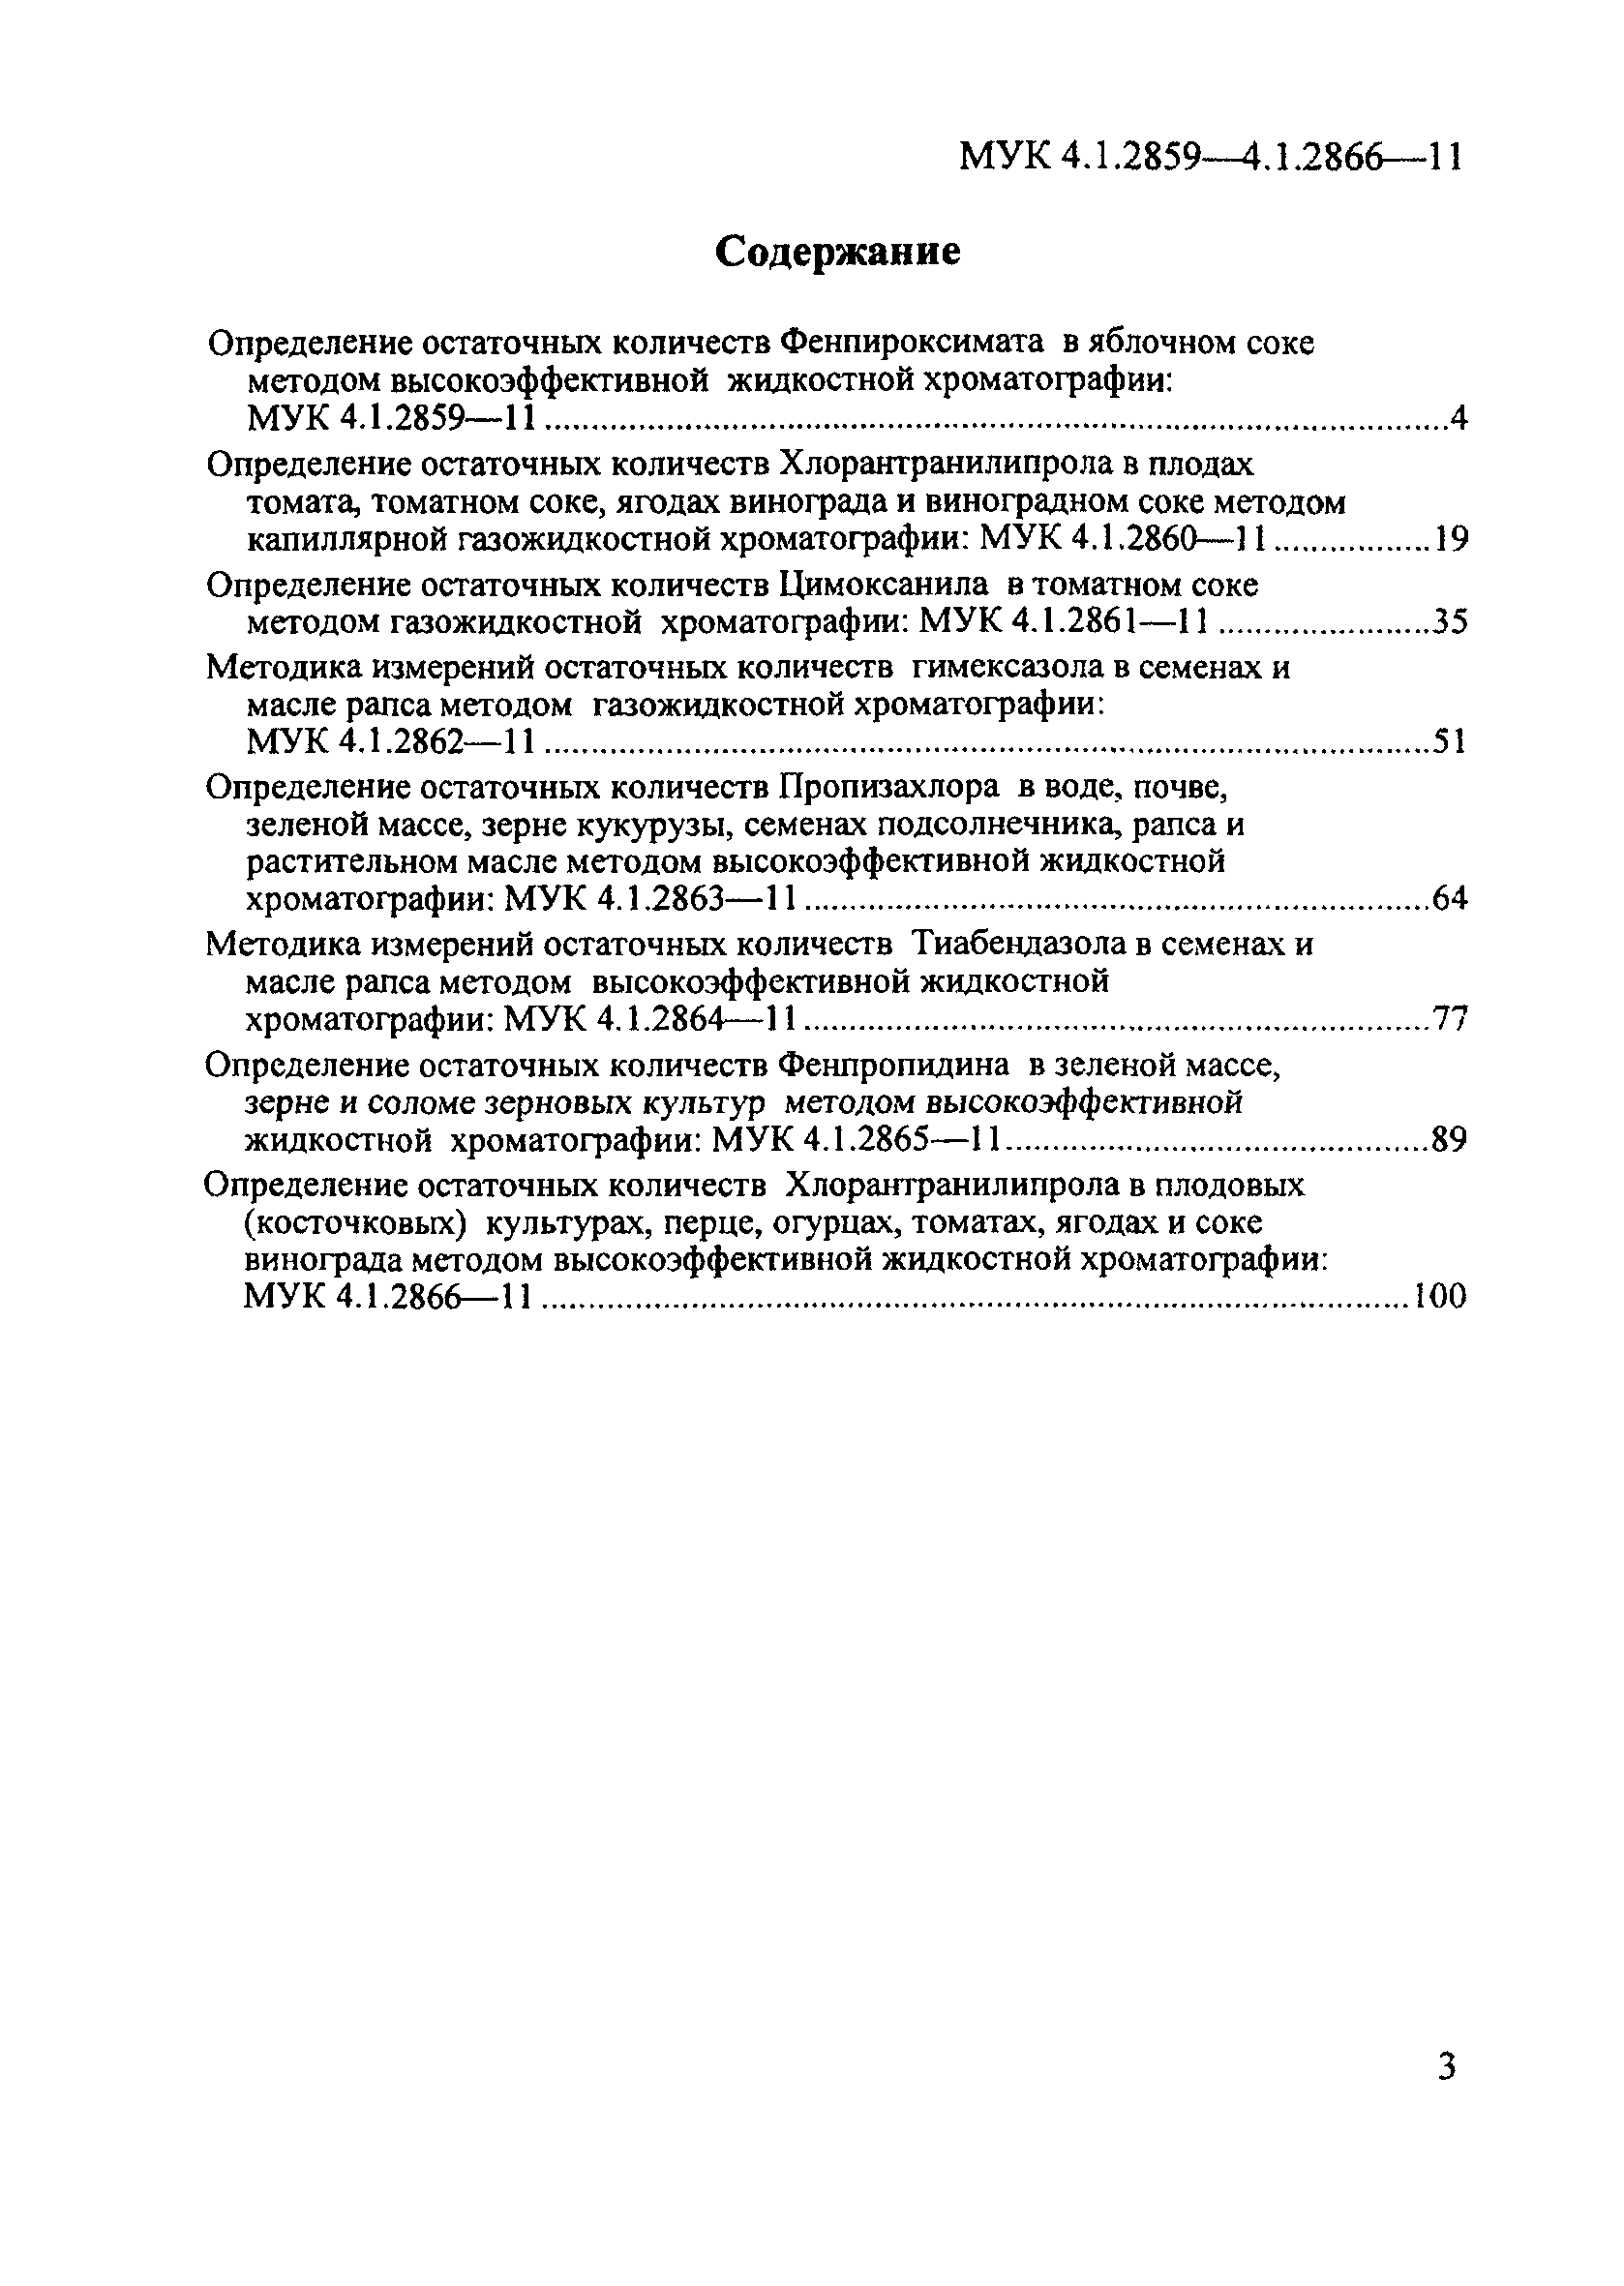 МУК 4.1.2864-11